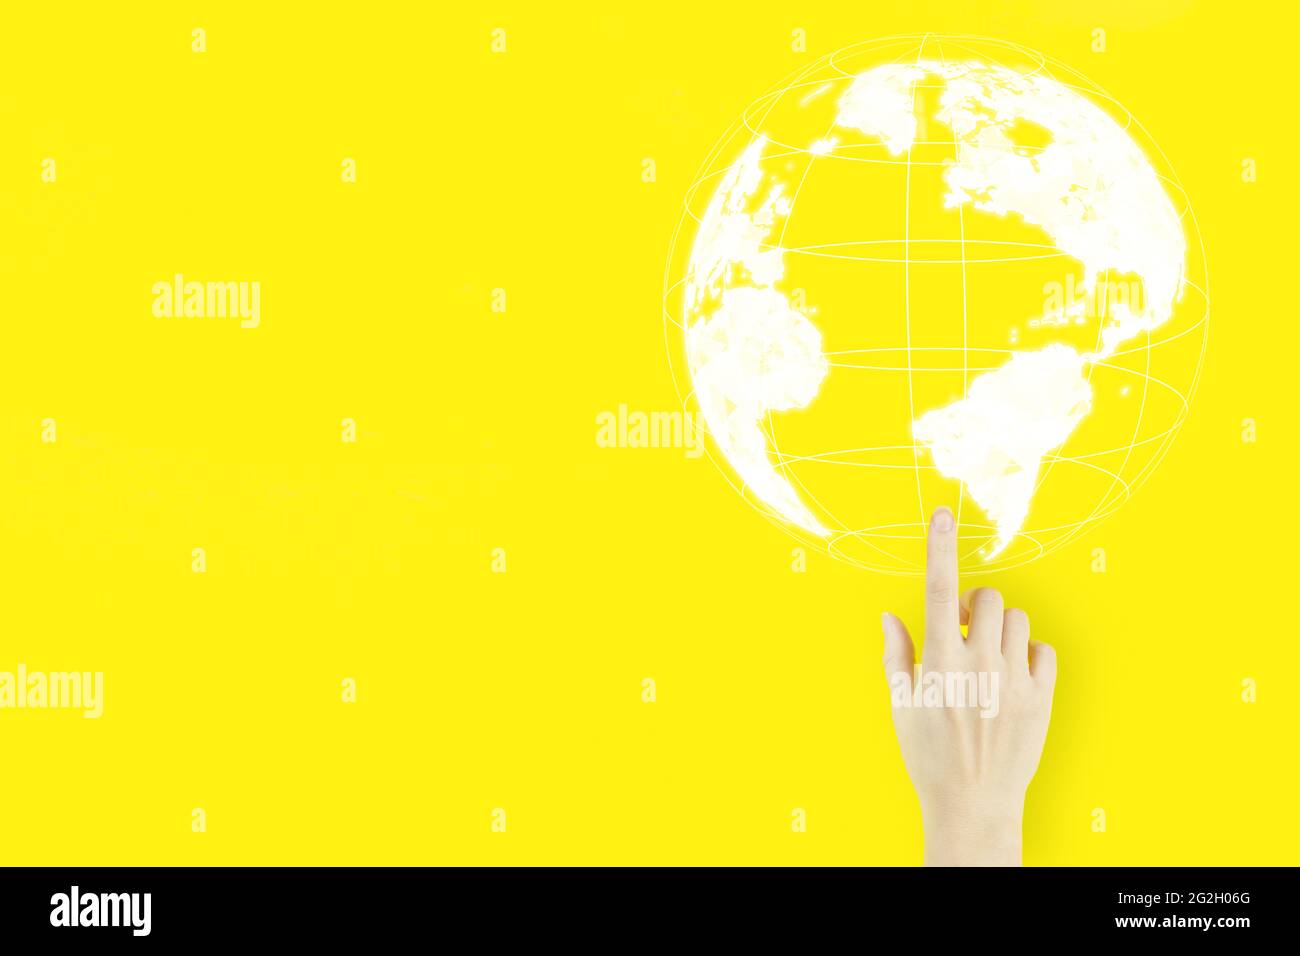 Medien weltweit Technologiekonzept. Der Handfinger der jungen Frau zeigt mit einem Hologramm auf gelbem Hintergrund. Internationales Geschäftskonzept Stockfoto